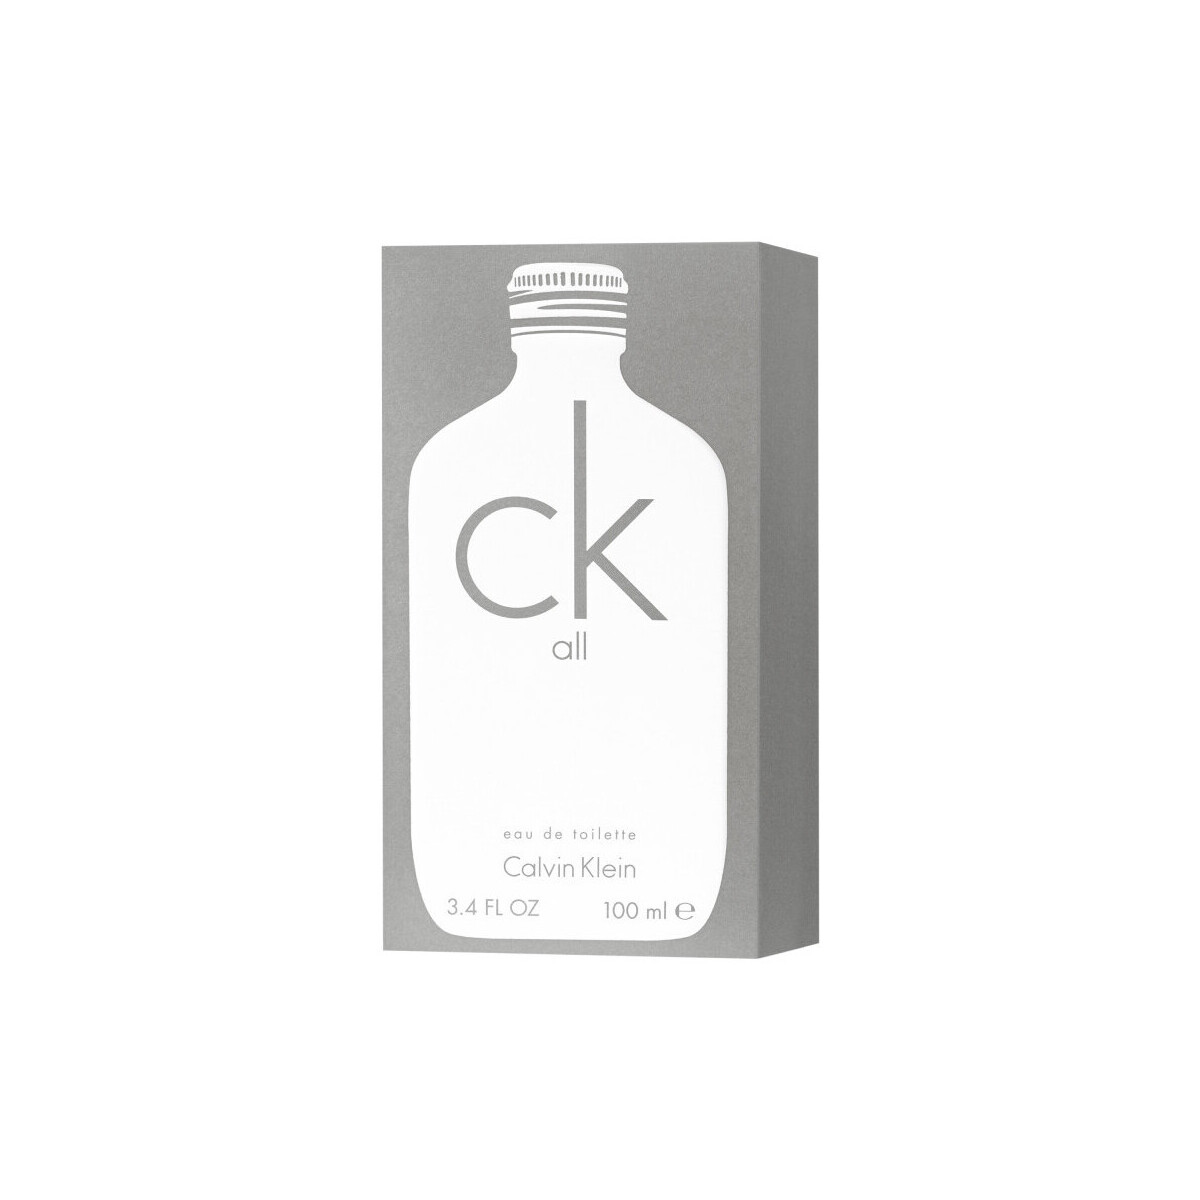 Beauty Kölnisch Wasser Calvin Klein Jeans CK All - köln - 100ml CK All - cologne - 100ml